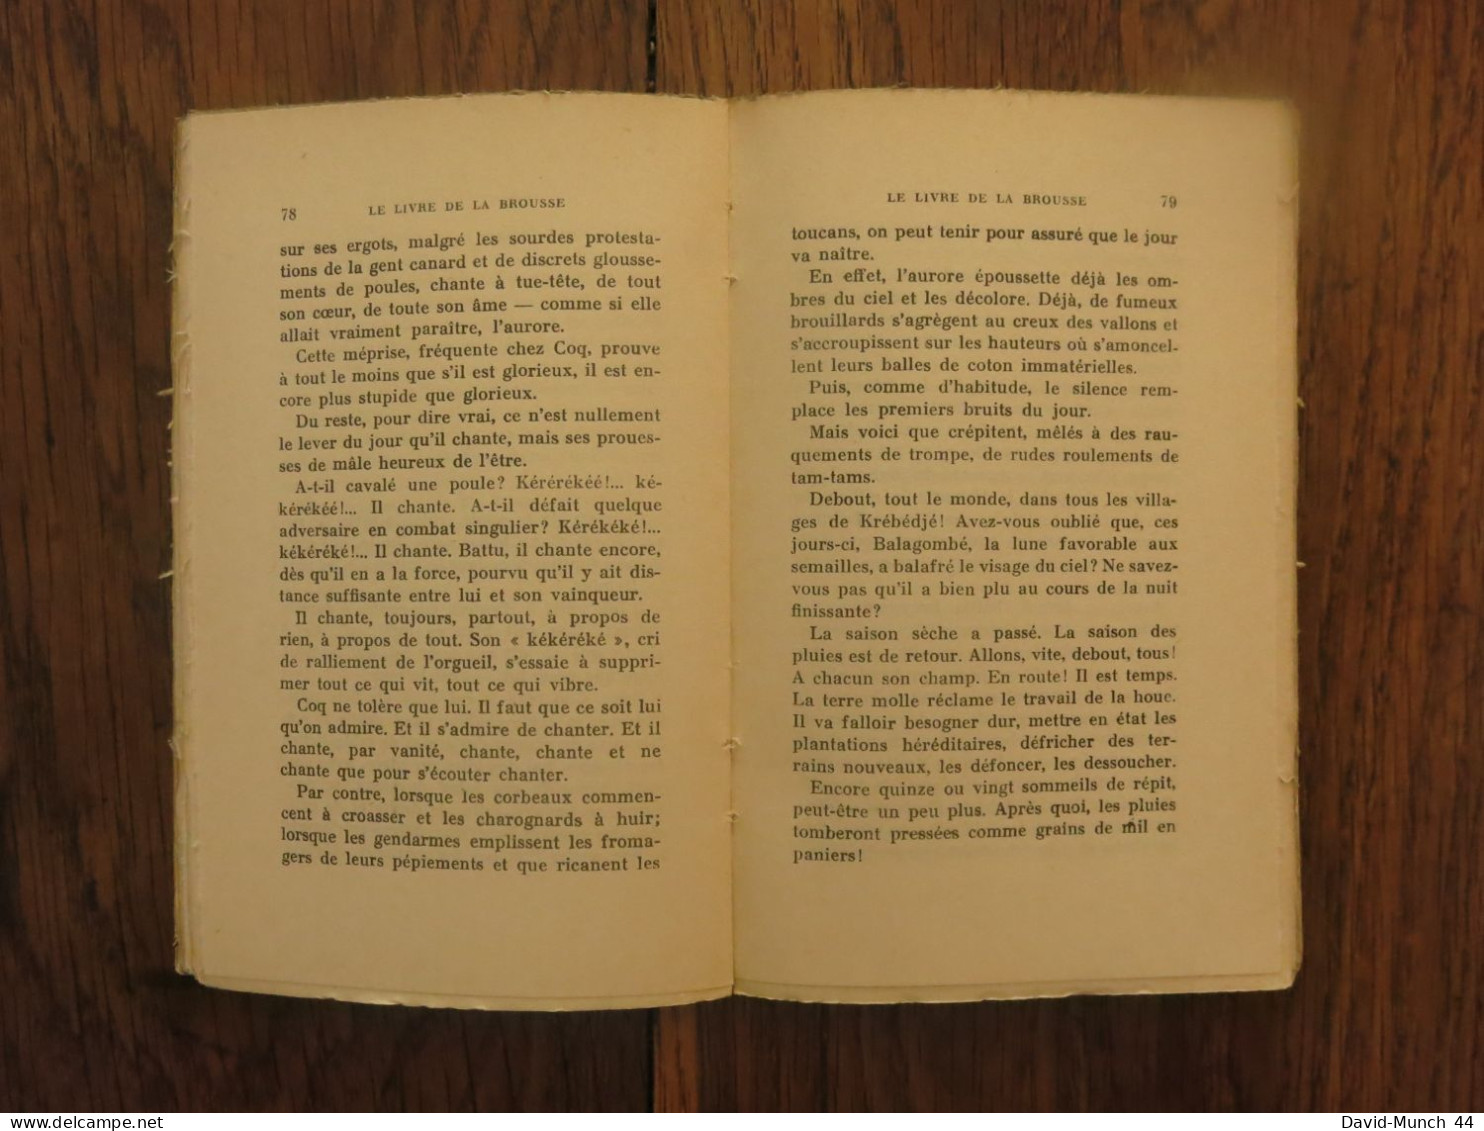 Le livre de la brousse de René Maran. Albin Michel, éditeur, Paris. 1934, exemplaire sur Vélin supérieur